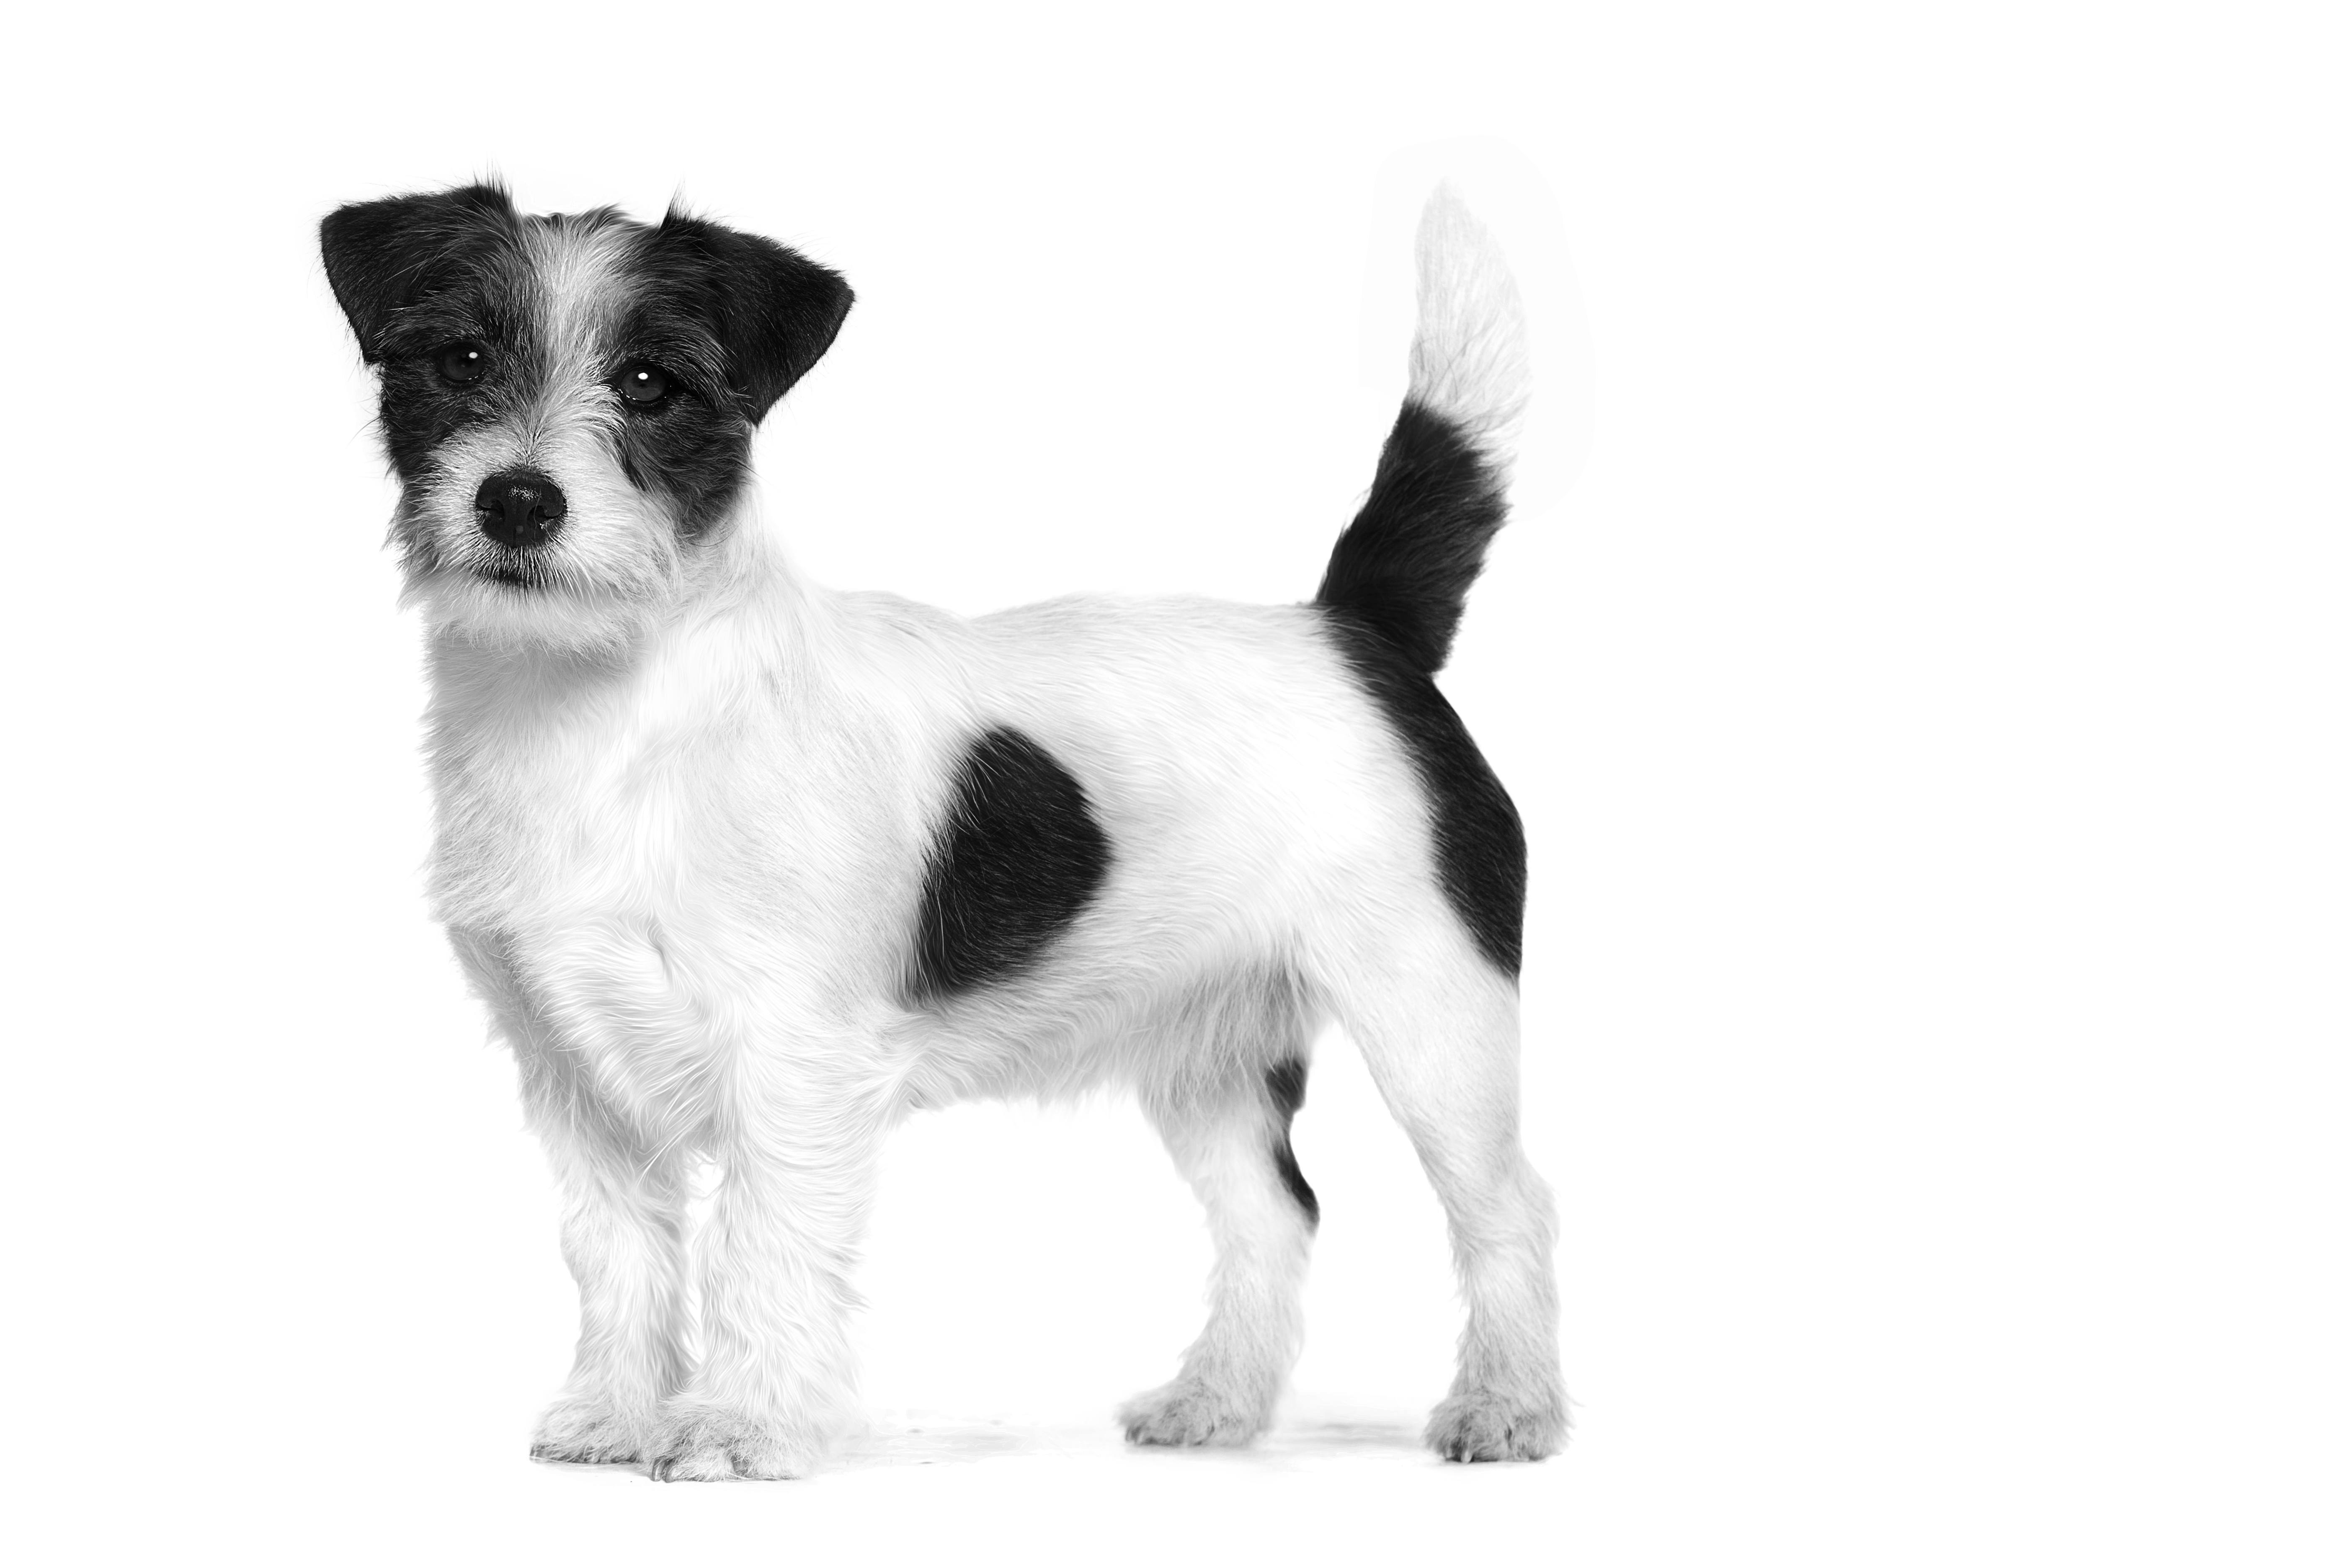 Anjing Jack Russel Terrier dewasa berdiri dalam warna hitam putih pada latar belakang putih